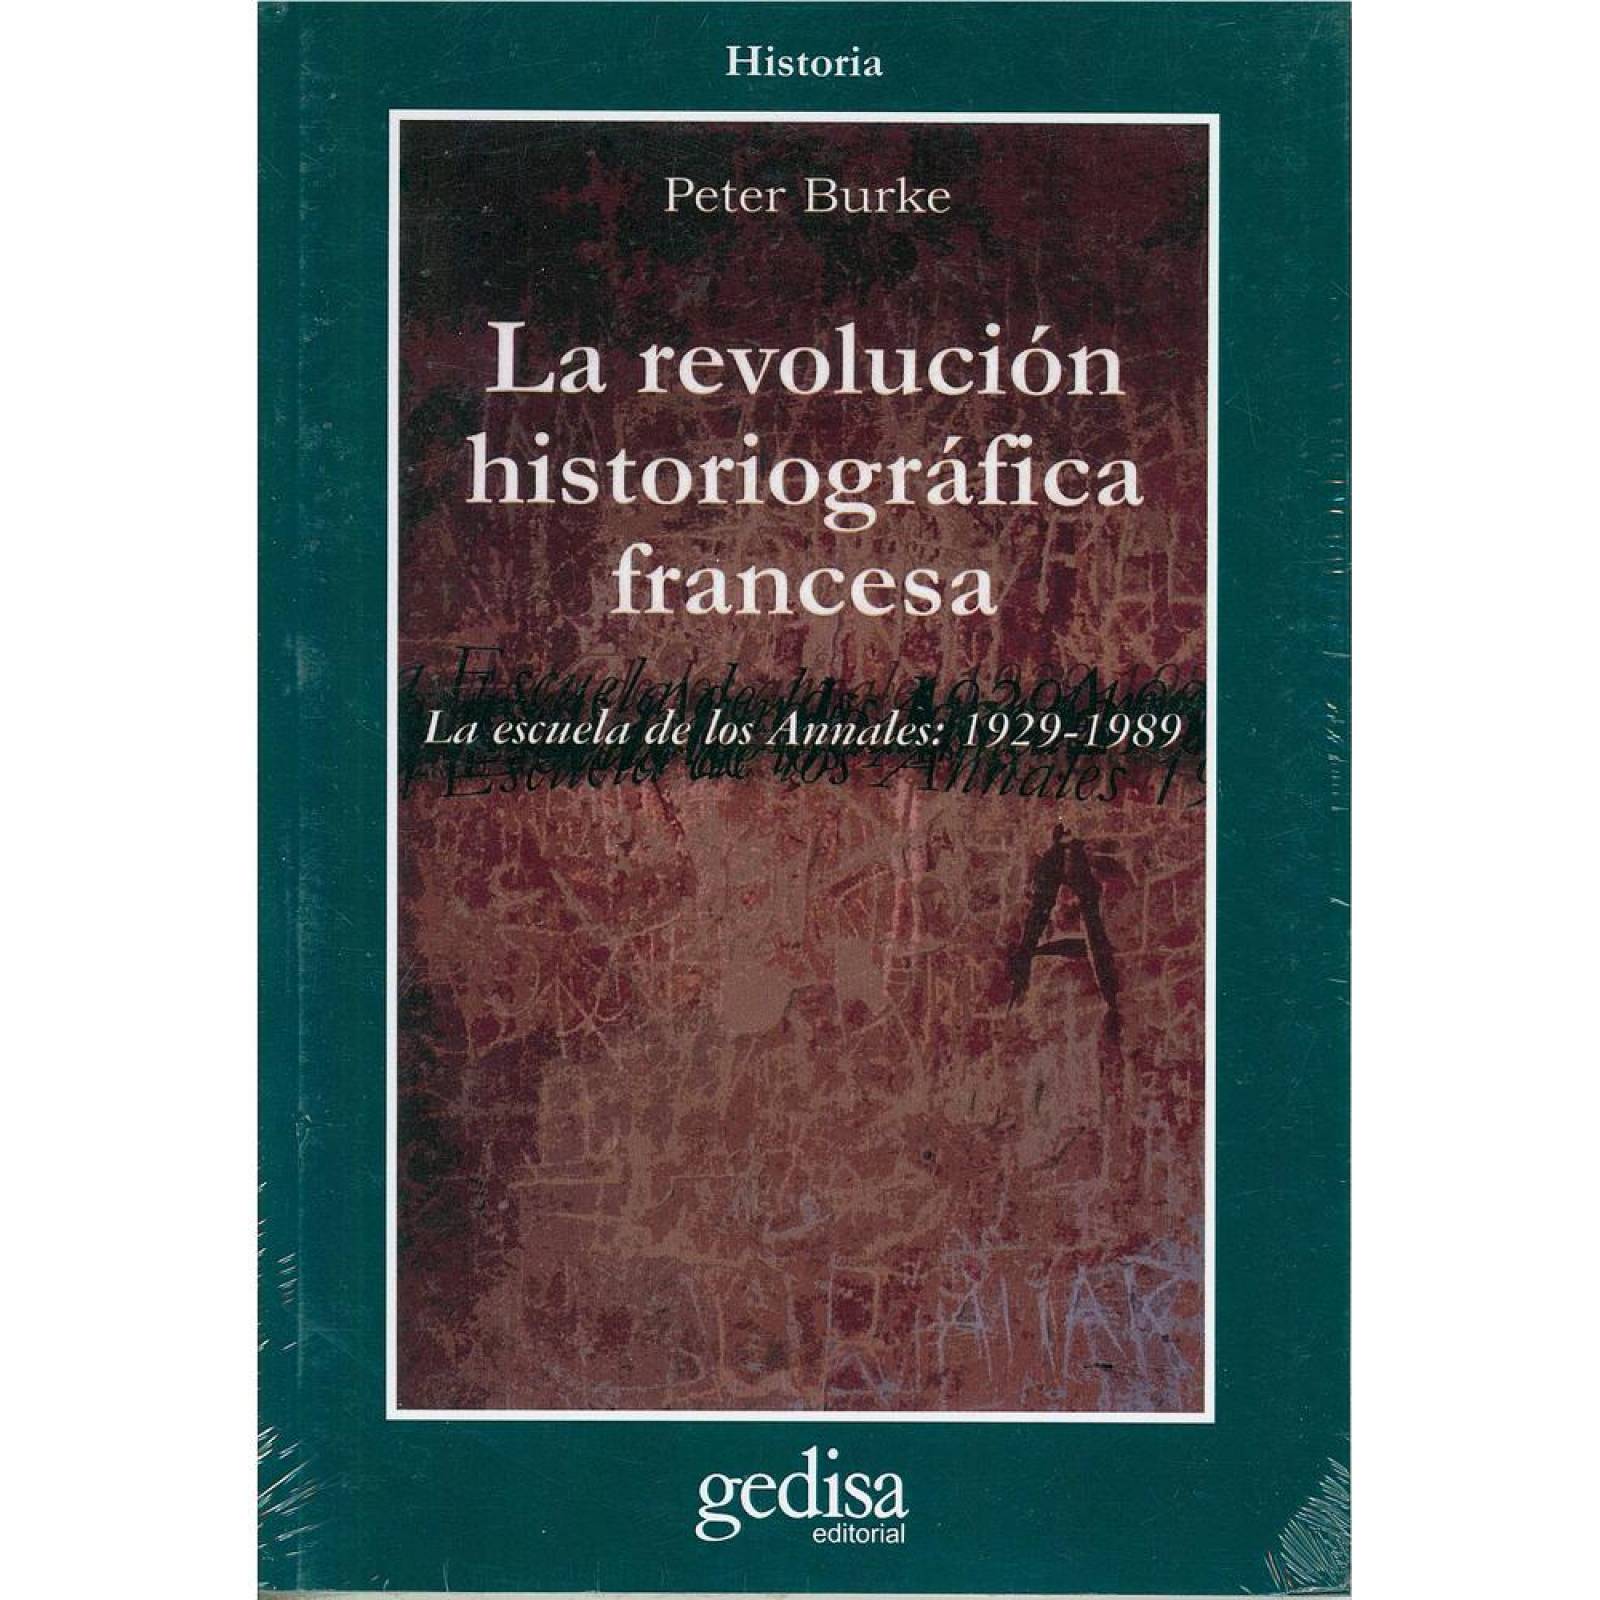 La revolución historiográfica francesa 